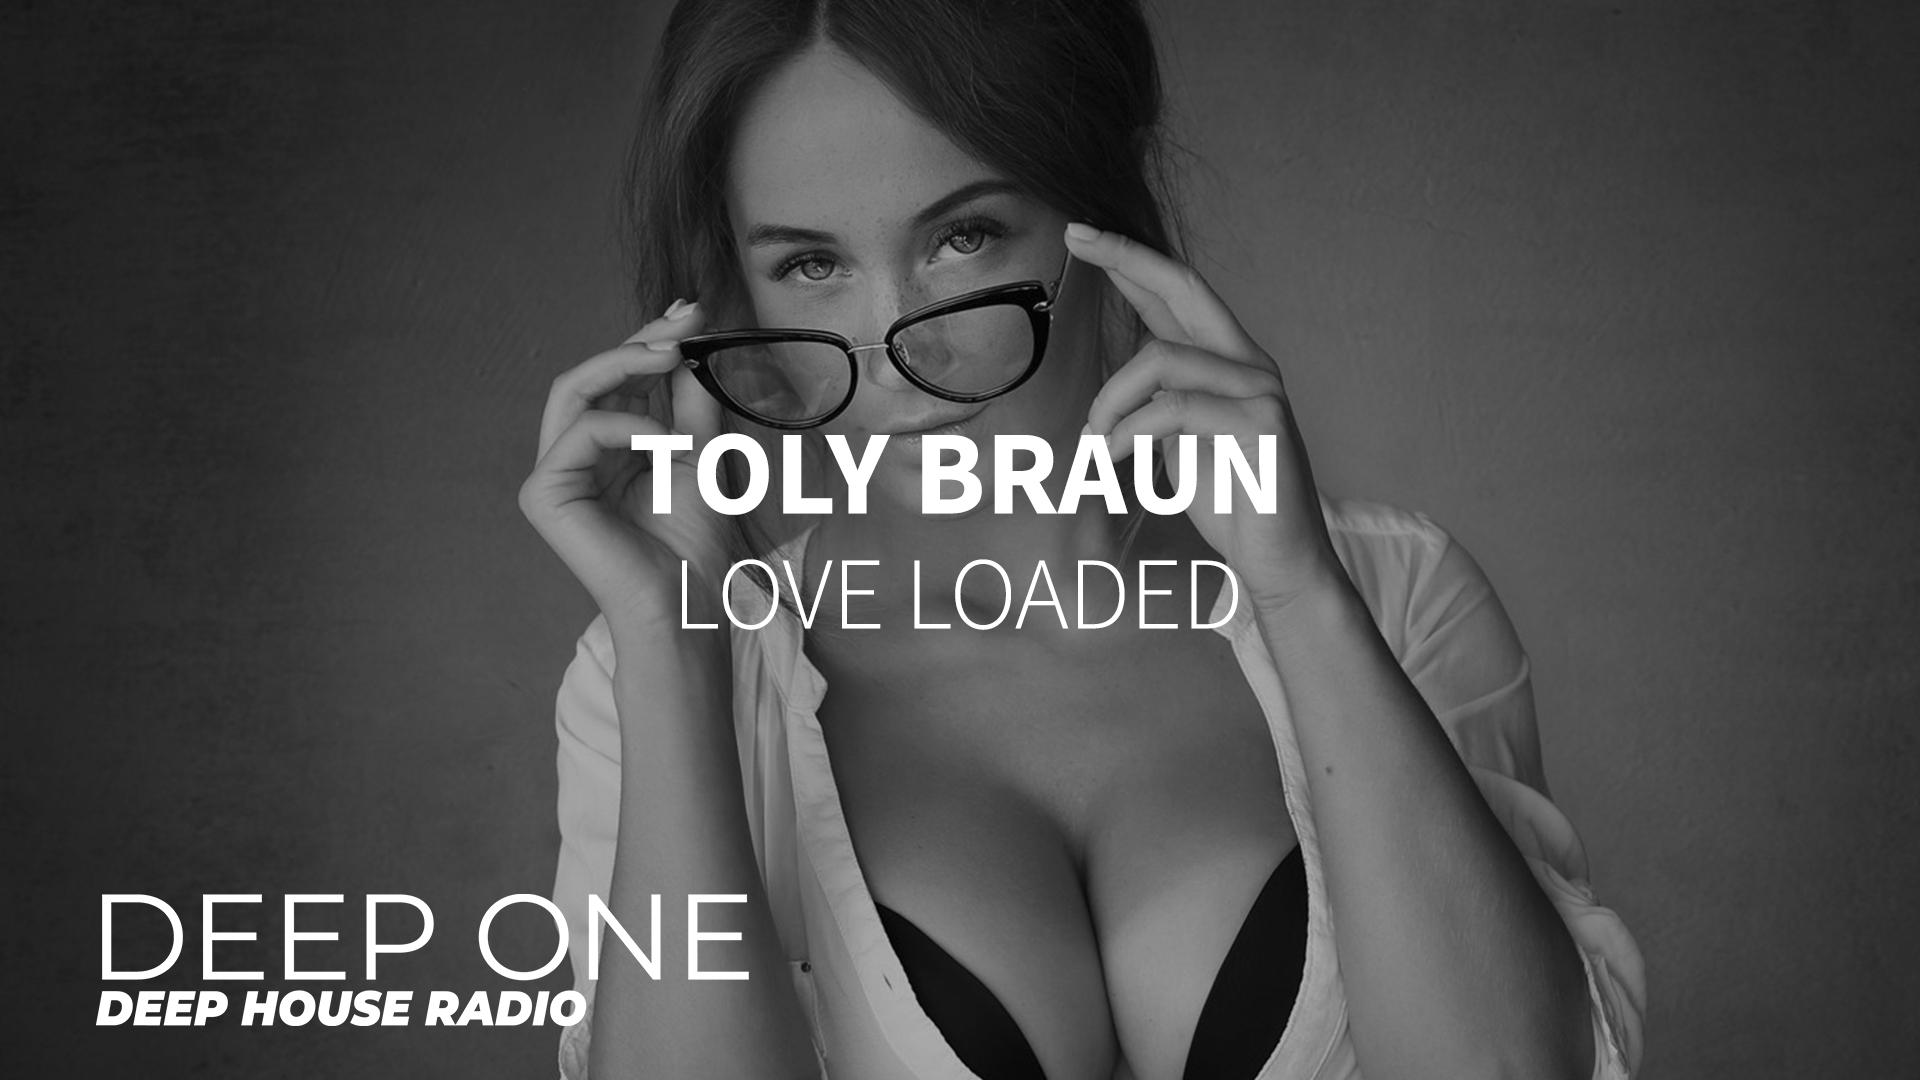 Toly Braun. Toly Braun Music. Toly Braun - Killer. Toly Braun - Killer (Original Mix). Любовь браун